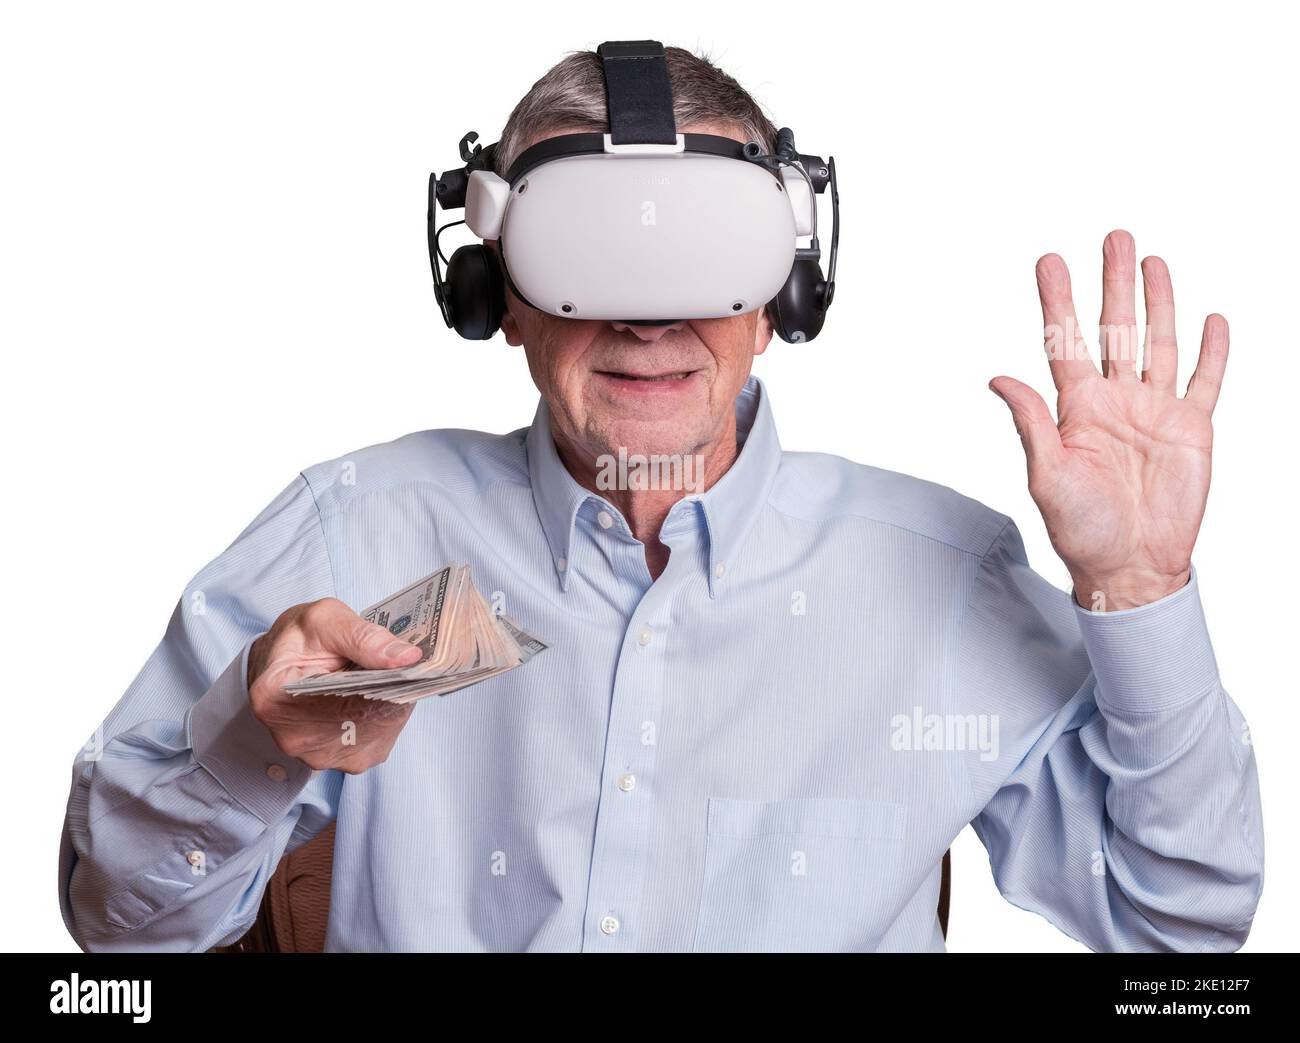 Isolierte Cyberkriminalität: Ältere Erwachsene zahlen bar, während sie ein Virtual-Reality-Headset tragen Stockfoto